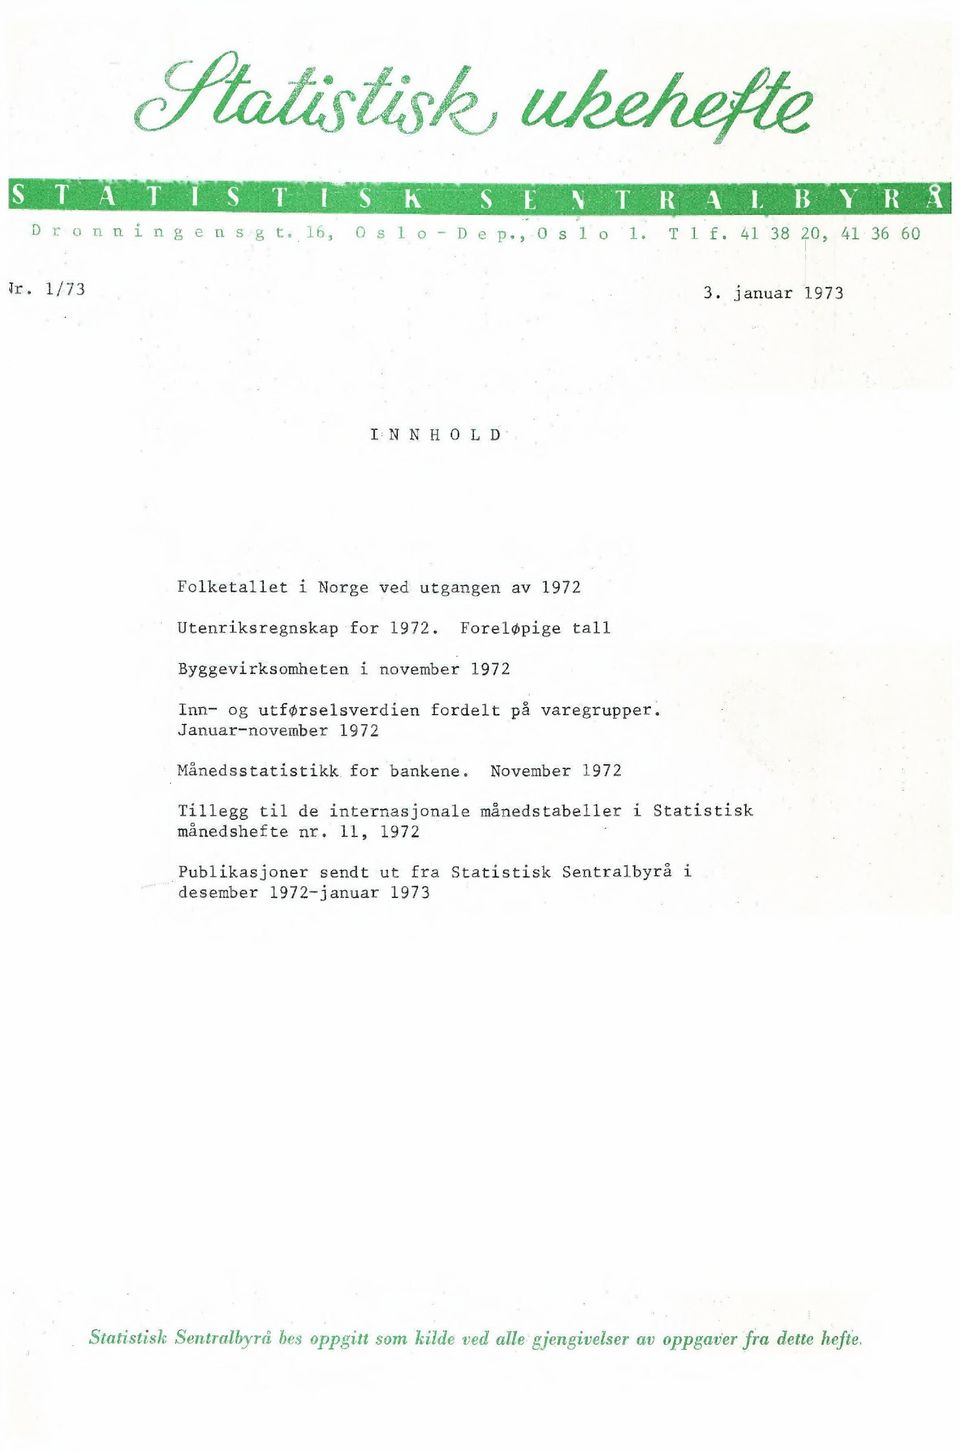 Januarnovember 1972 Månedsstatistikk for bankene.